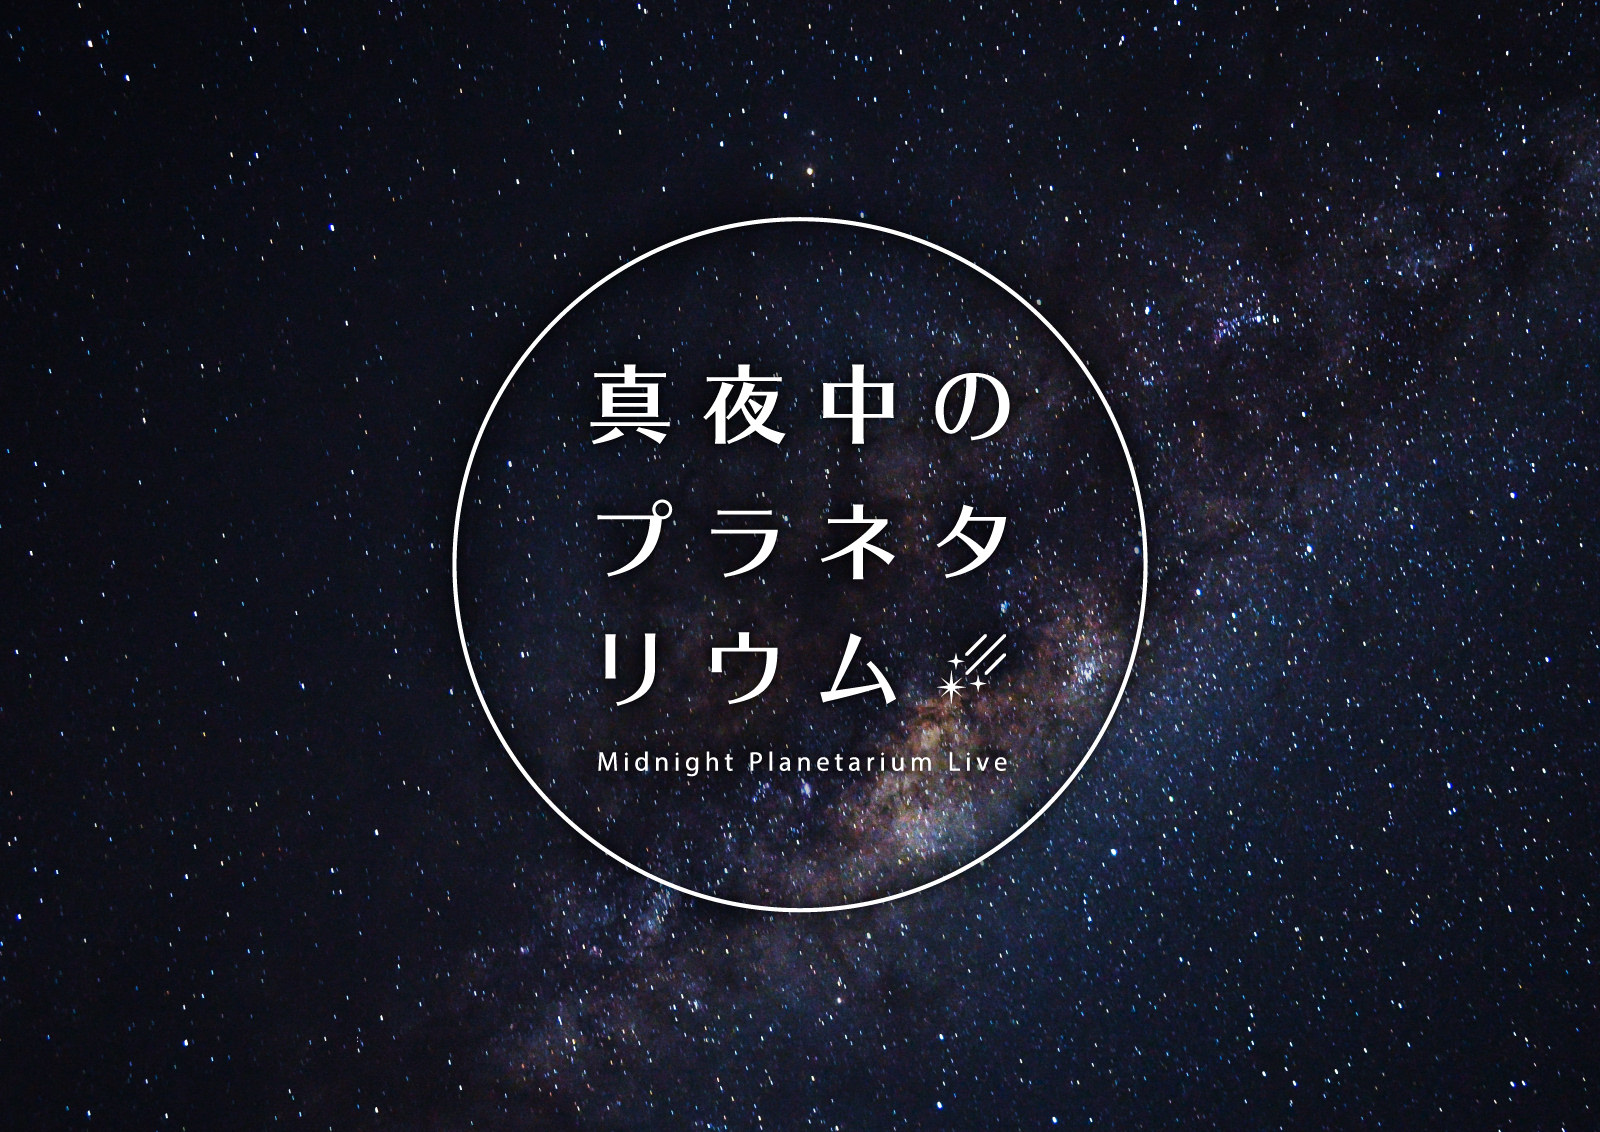 プラネタリウムからの音楽ライブ配信がスタート
『真夜中のプラネタリウム‐Midnight Planetarium Live‐』